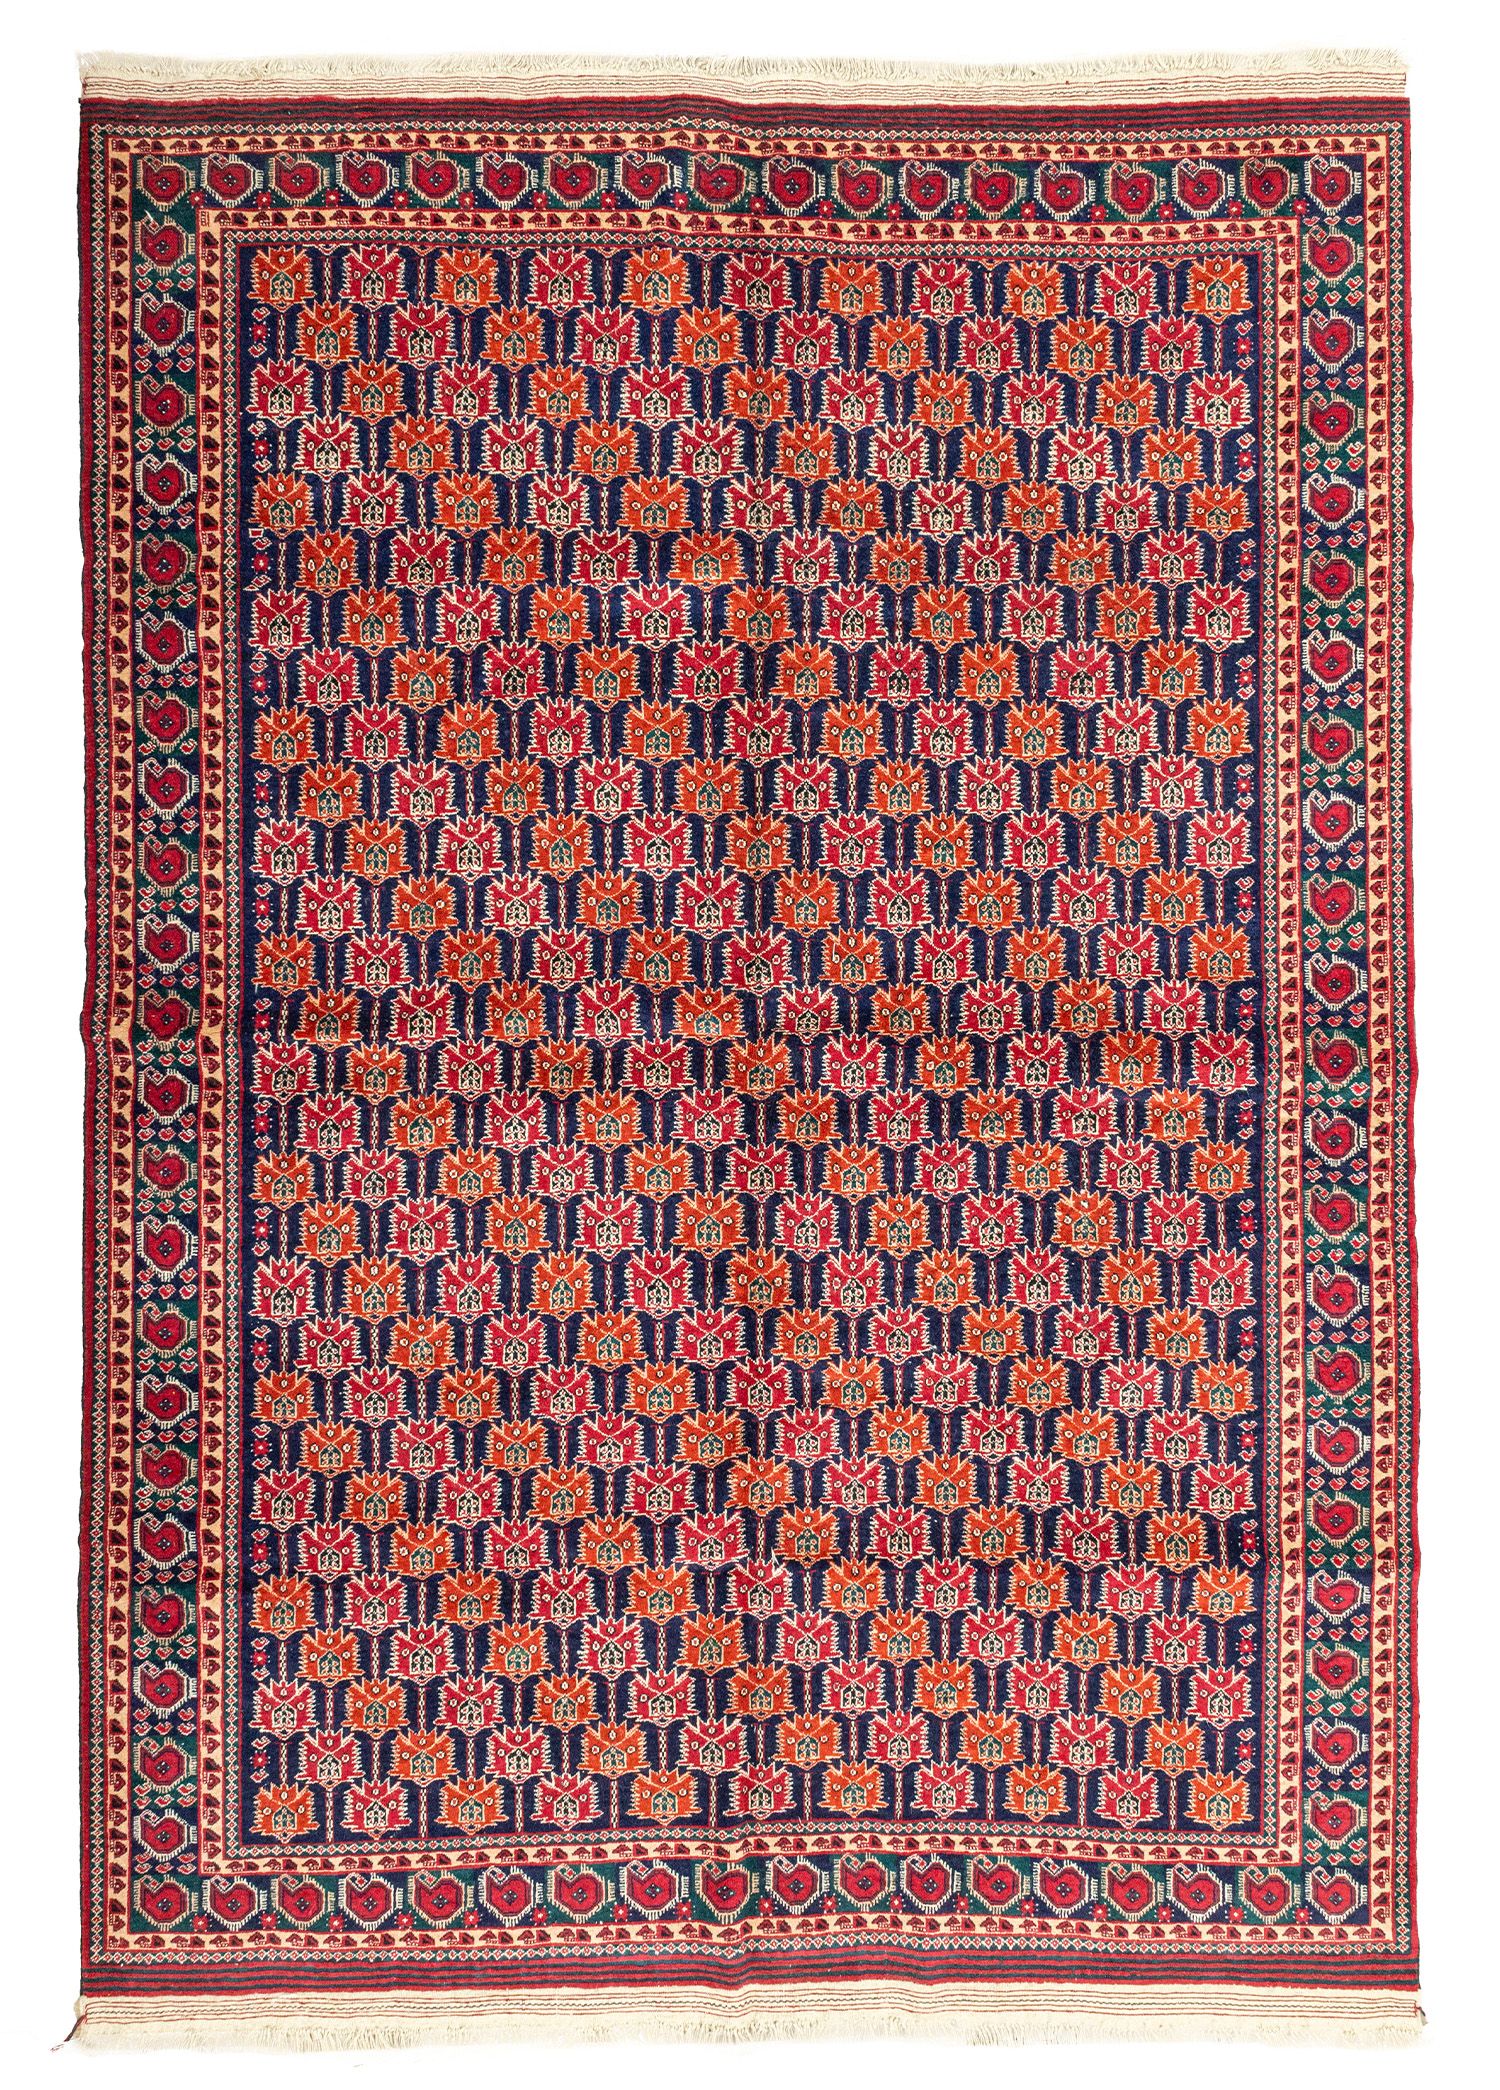 Mary El Dokuma Yün Türkmen Halısı 196x282 cm